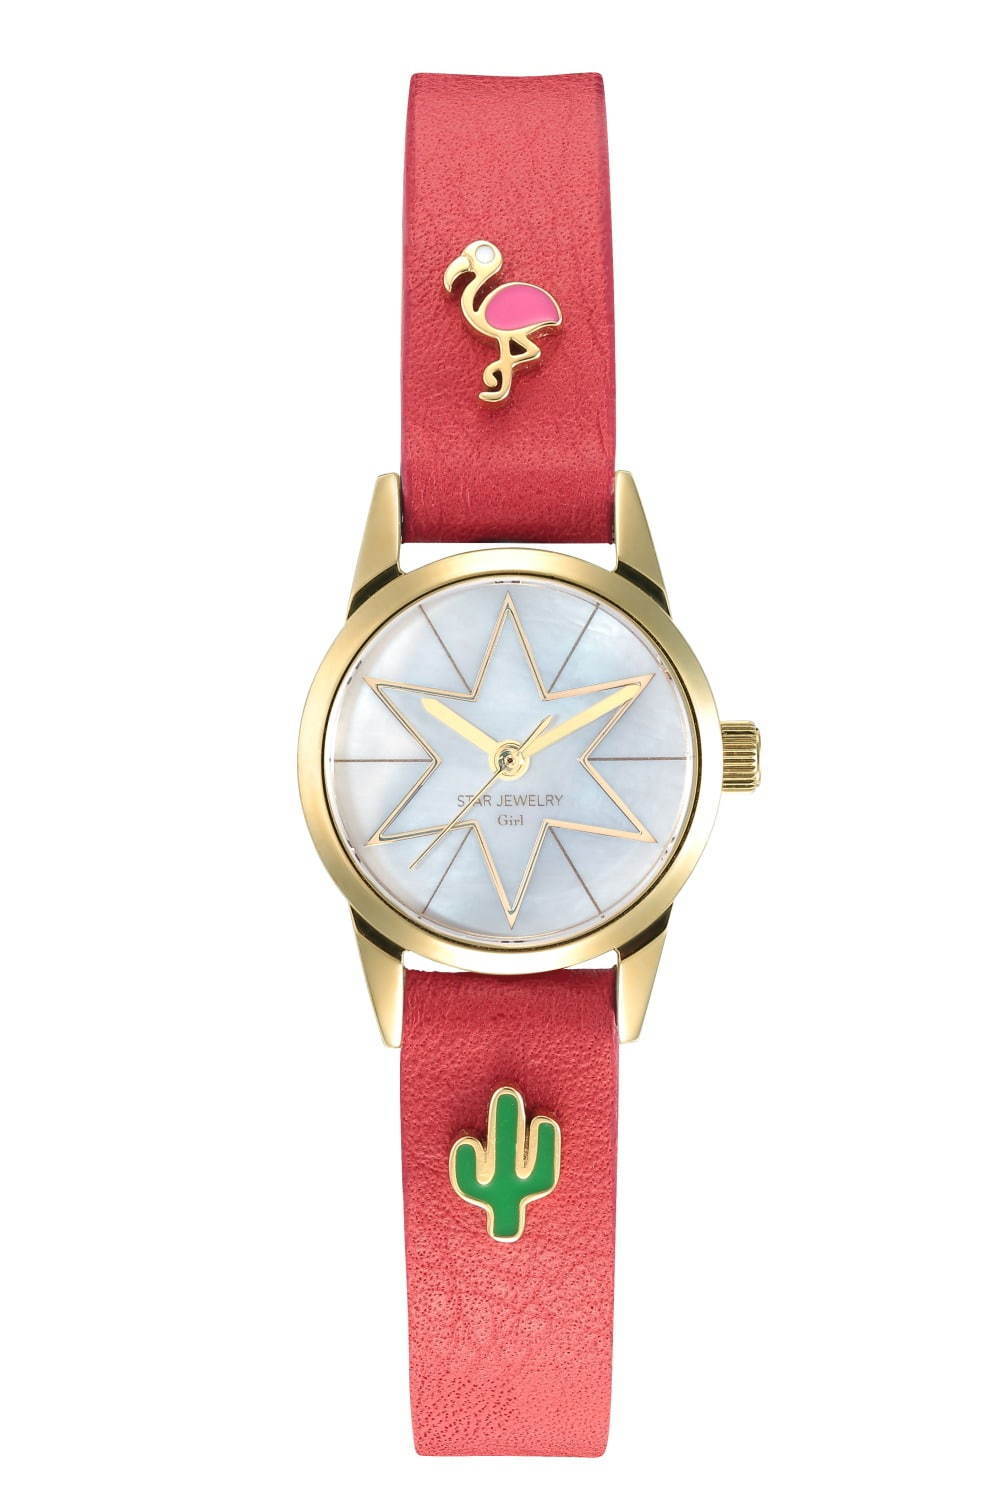 スタージュエリー ガール“カスタマイズ”を楽しむ新作腕時計、サボテンやパイナップルなど陽気なチャーム - ファッションプレス